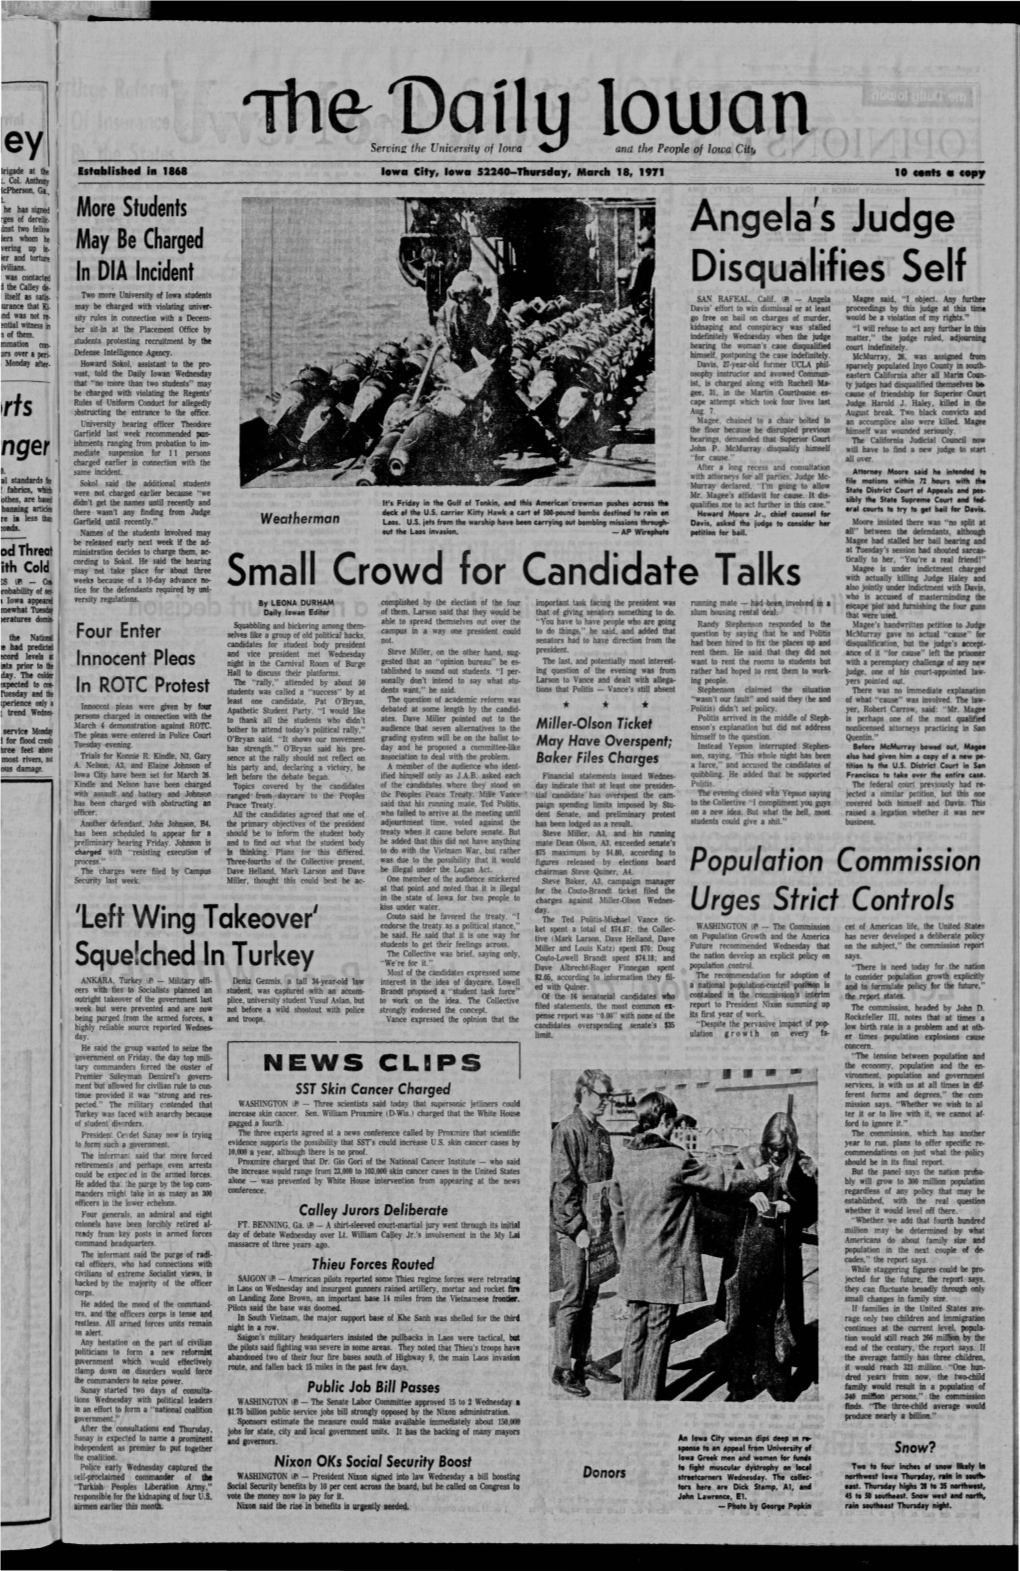 Daily Iowan (Iowa City, Iowa), 1971-03-18